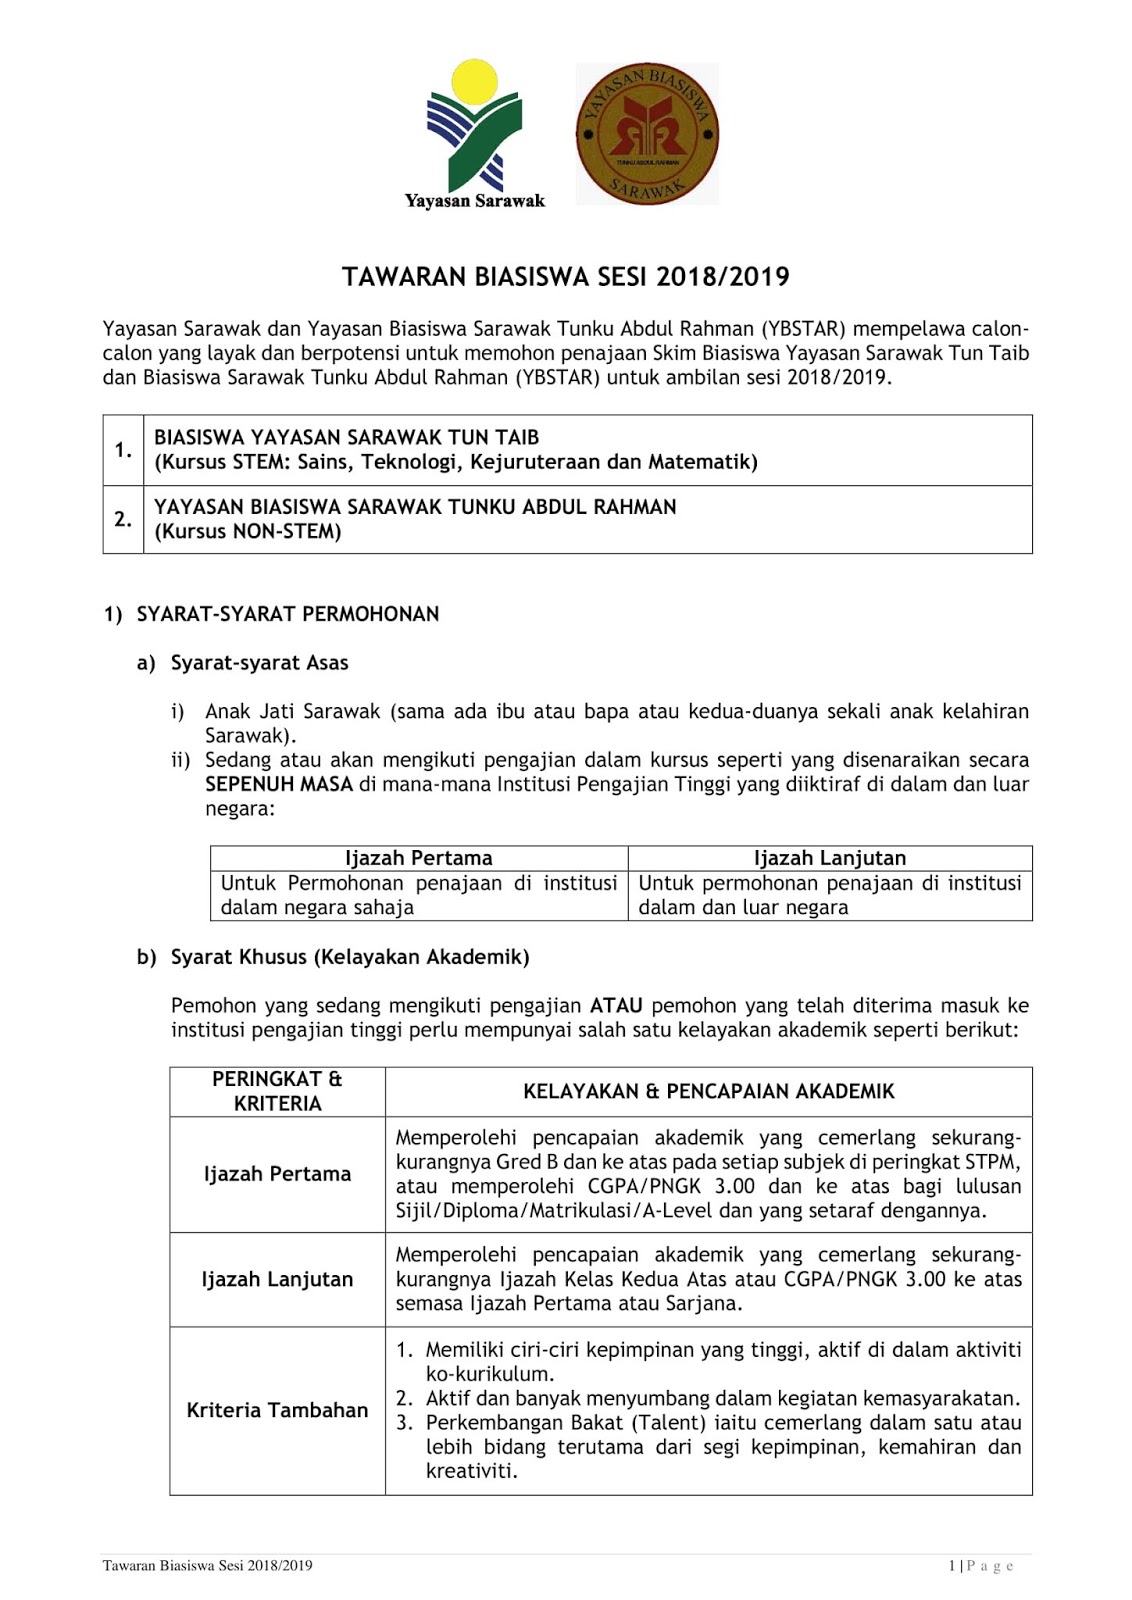 Tawaran Biasiswa Yayasan Sarawak Sesi 2018 2019